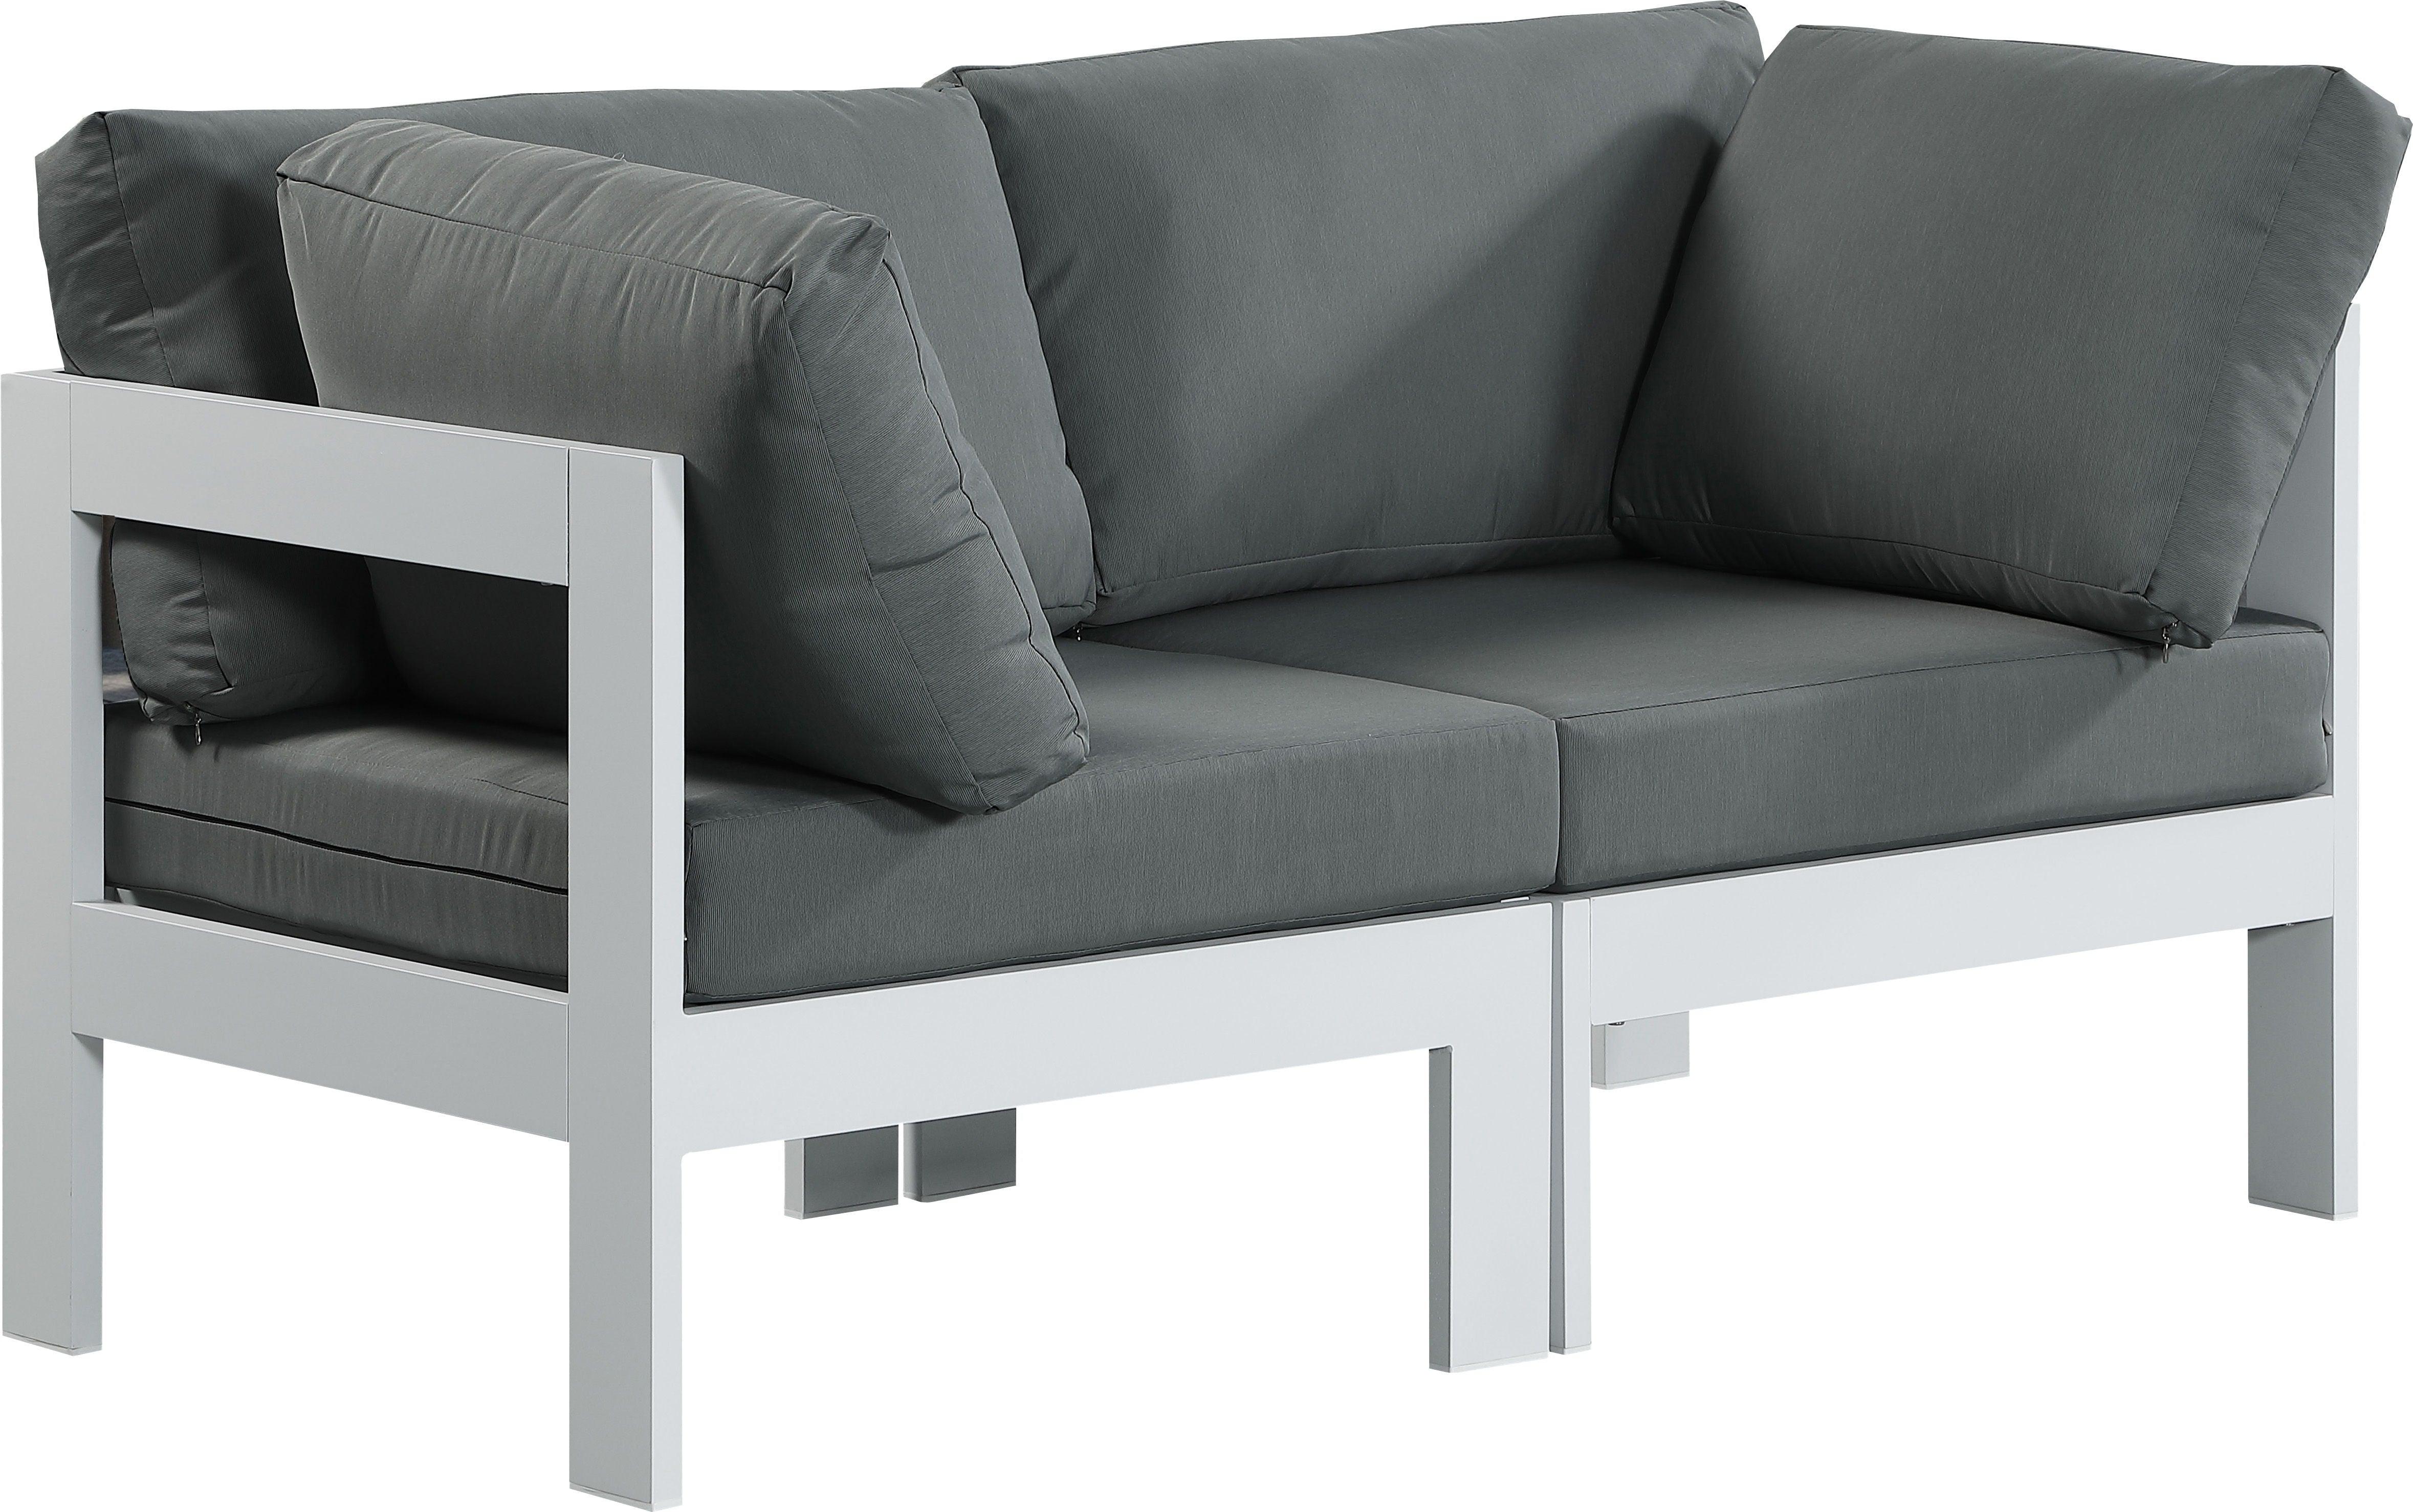 Meridian Furniture - Nizuc - Outdoor Patio Modular Sofa - Grey - Fabric - Metal - 5th Avenue Furniture